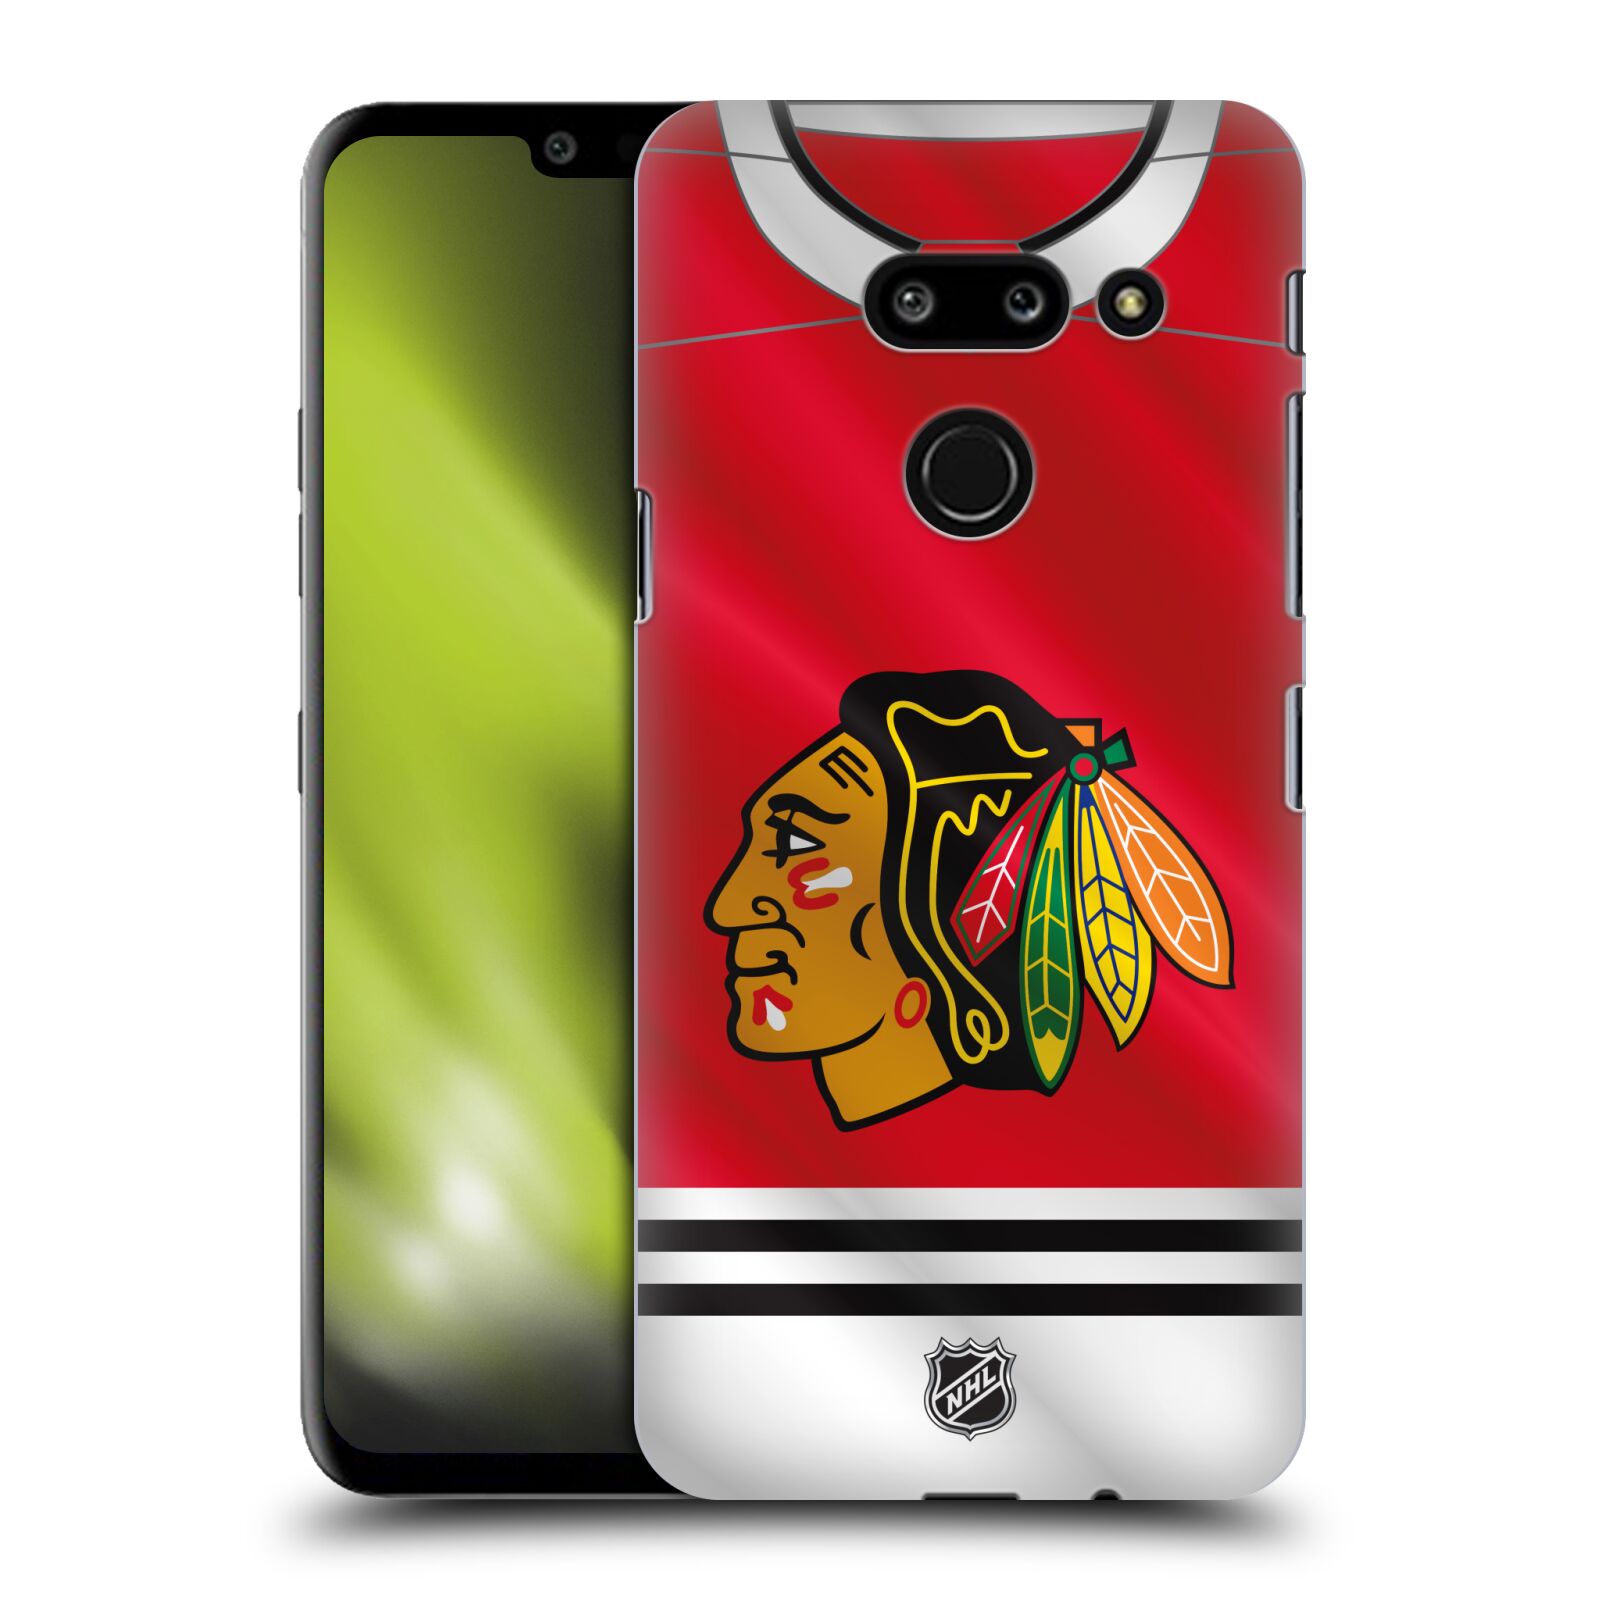 Pouzdro na mobil LG G8 ThinQ - HEAD CASE - Hokej NHL - Chicago Blackhawks - dres